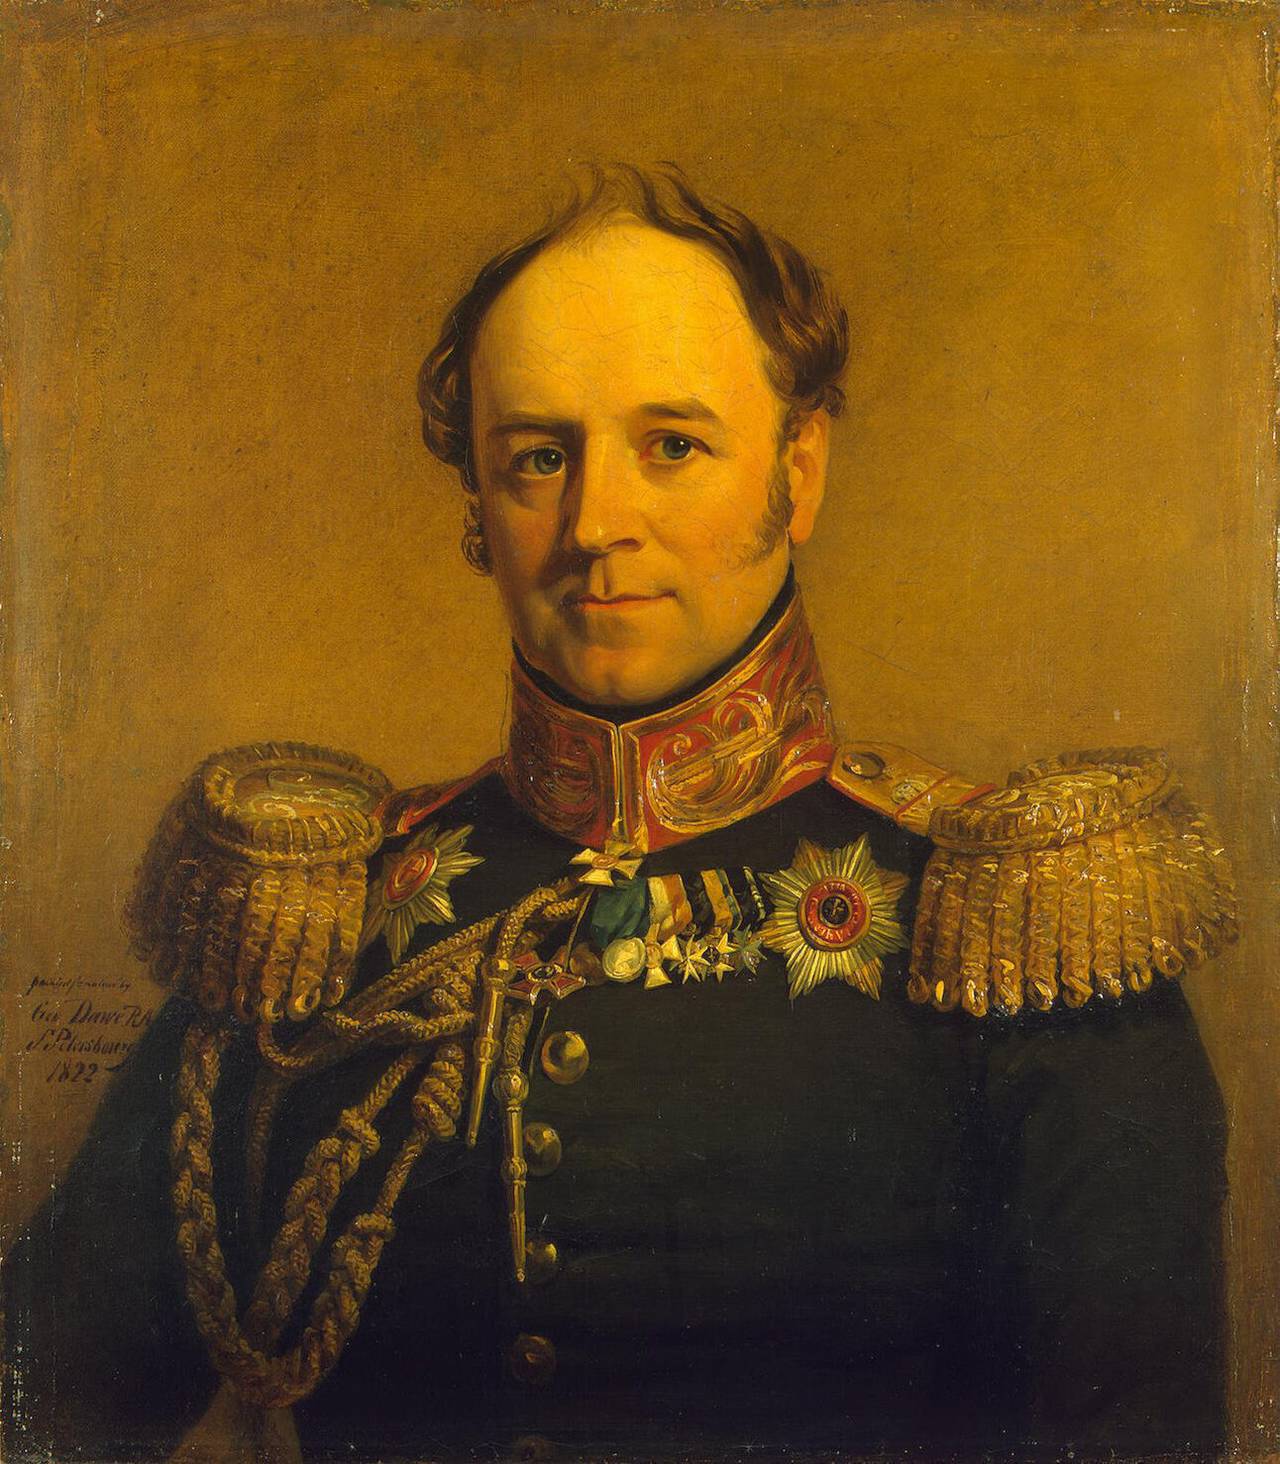 Alexander Khristoforovich Benkendorf - um maravilhoso oficial russo, o herói da guerra 1812